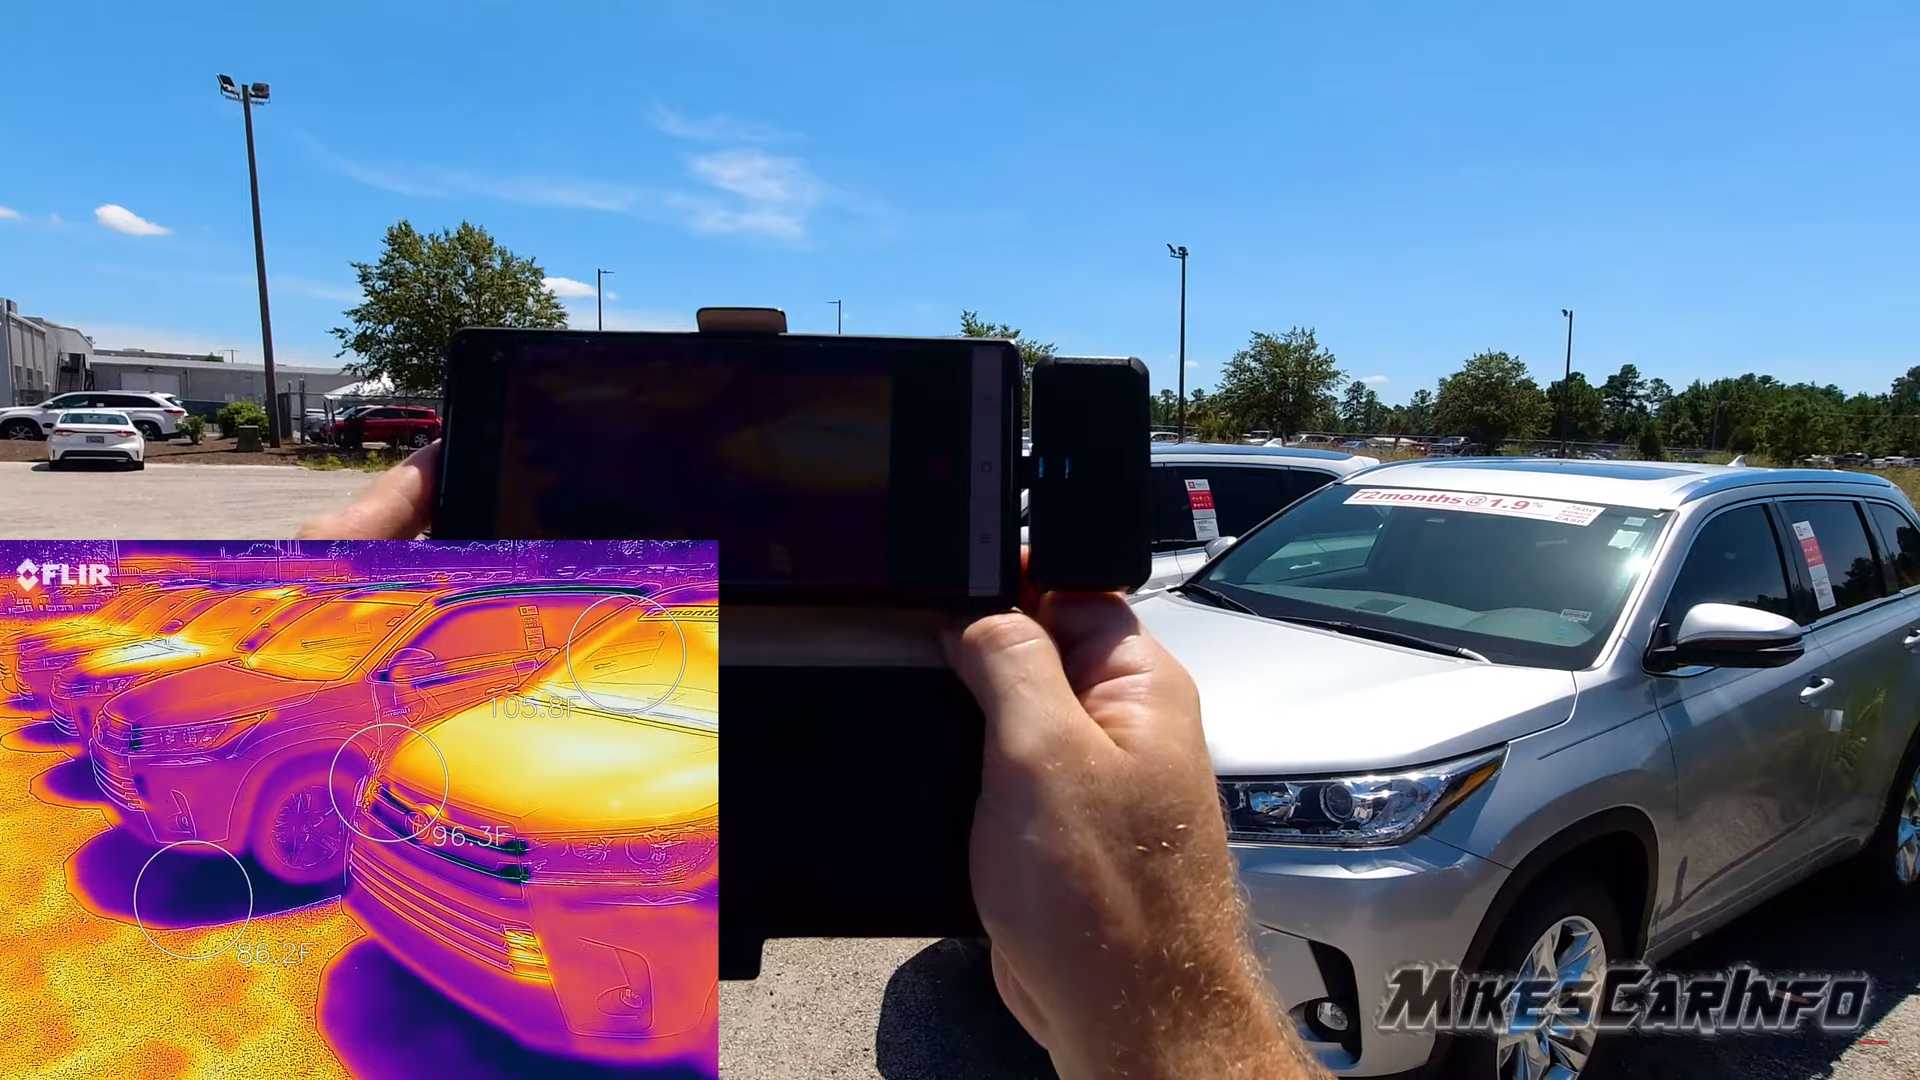 “بالفيديو” لأي مدى تختلف درجة حرارة السيارة اعتماداً على لونها؟